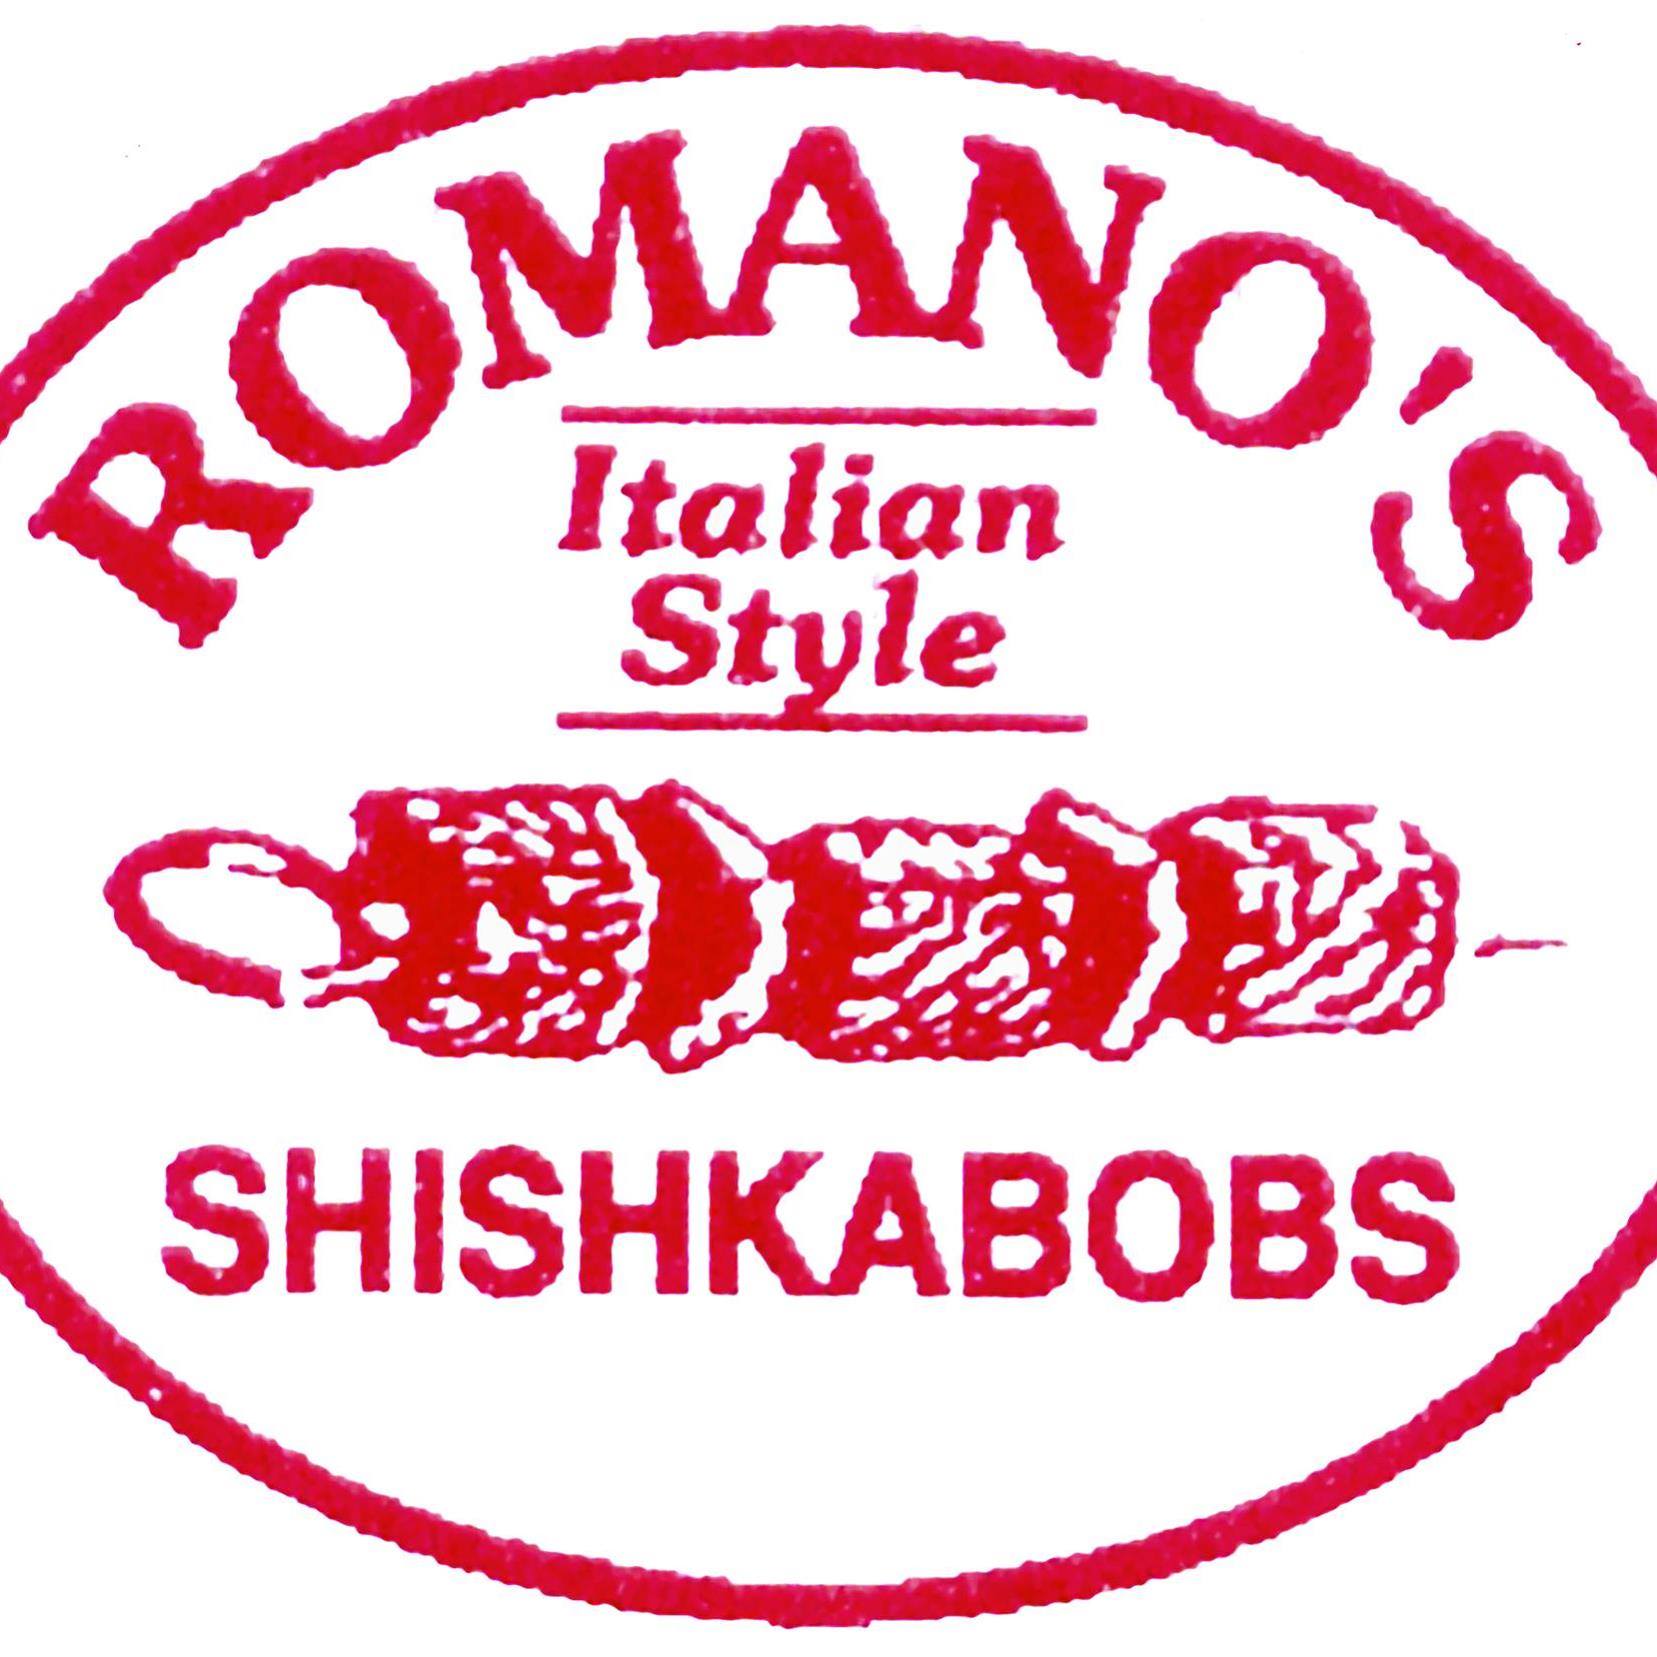 Romano’s Specialty Meats & Italian Deli